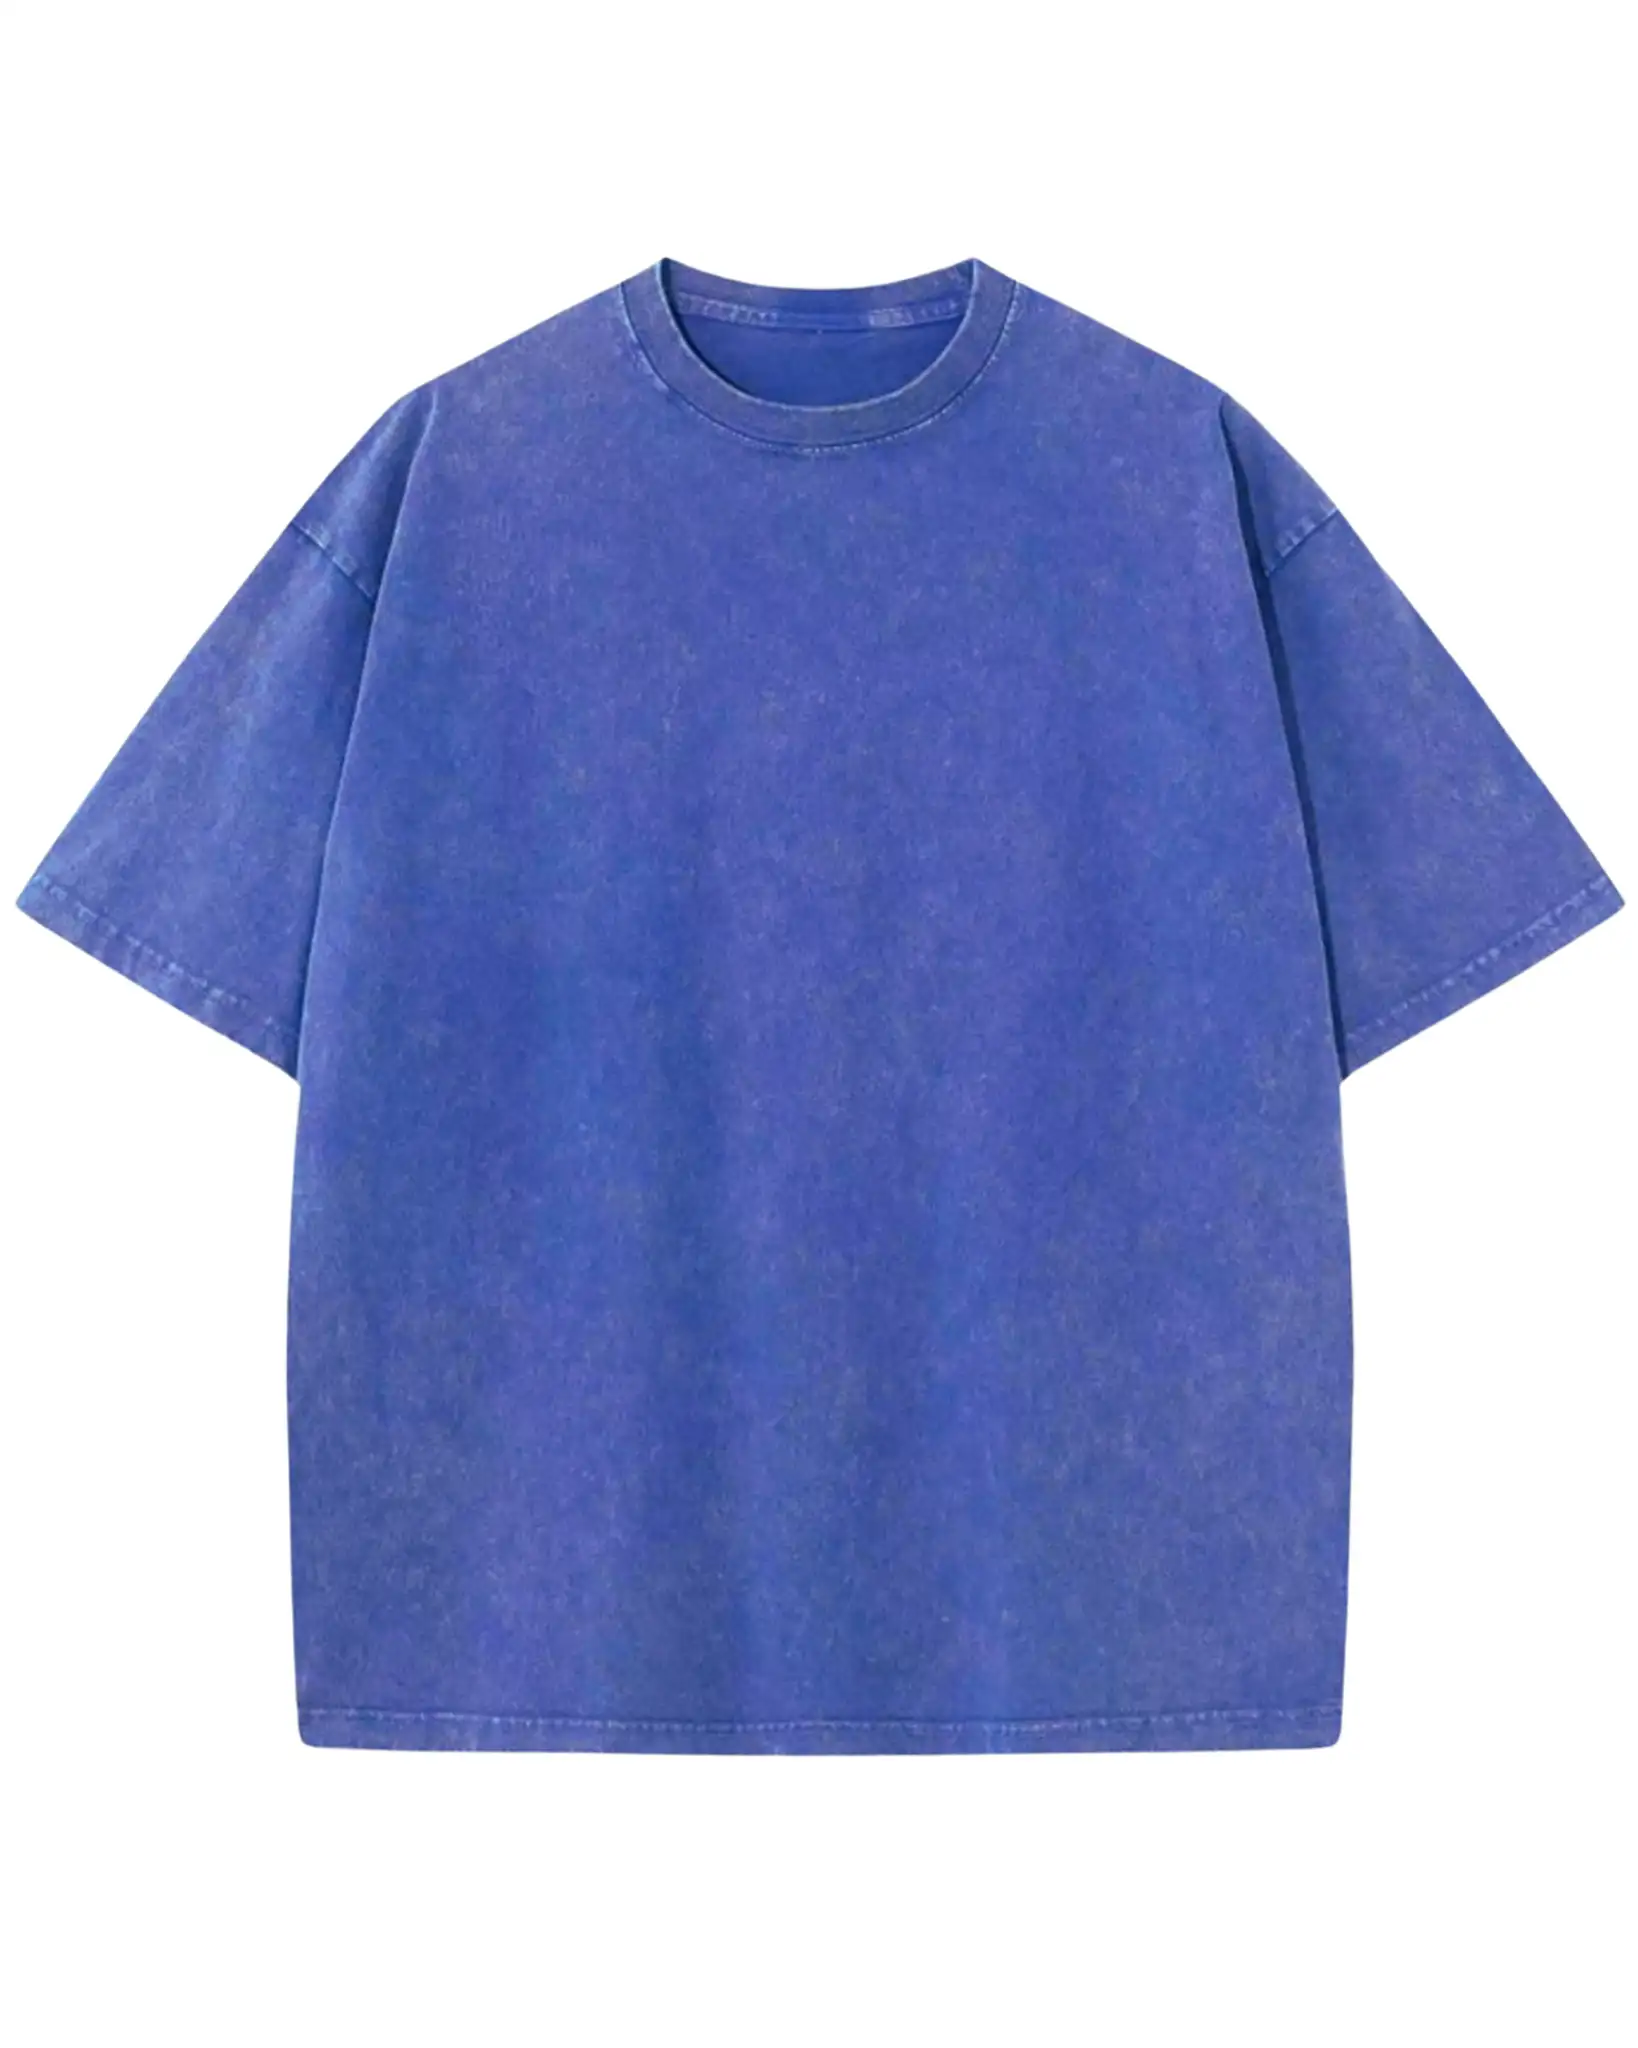 Indigo Stone Wash T-shirt Oversize 2.0